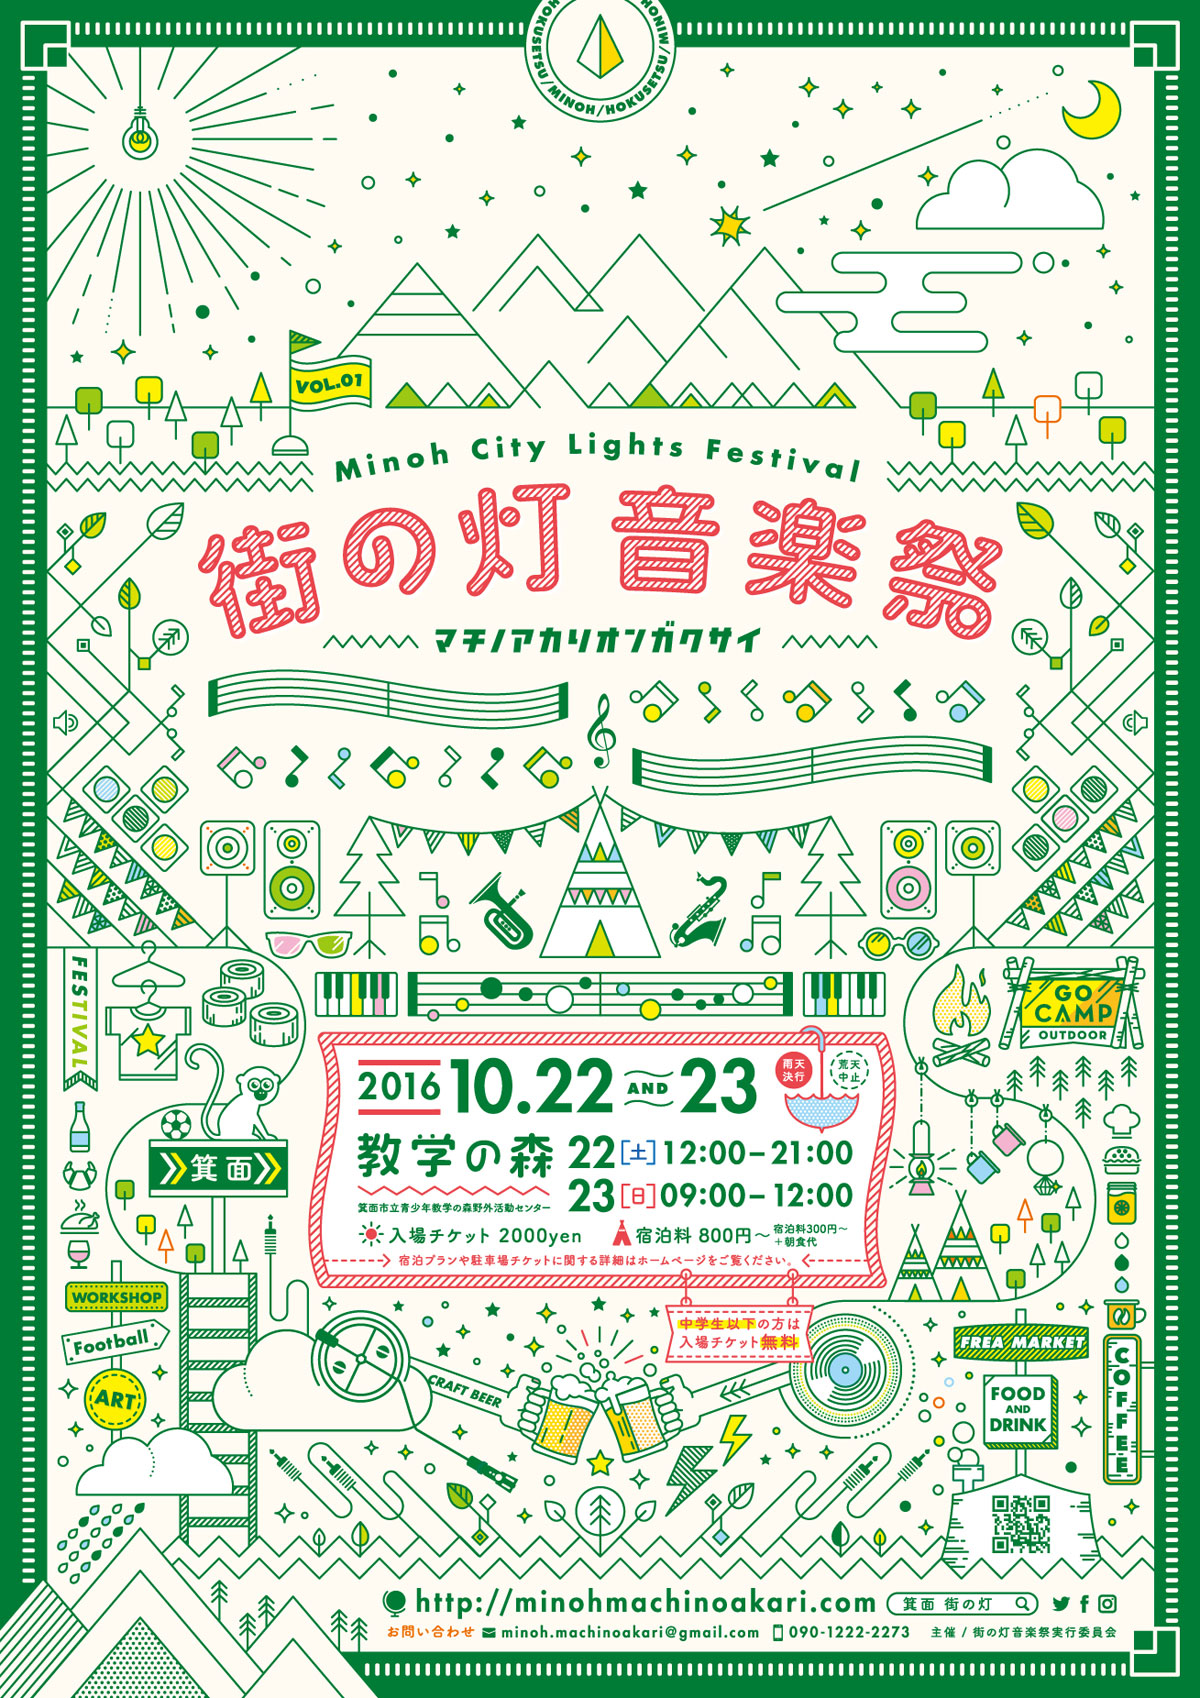 イベントのポスターデザイン